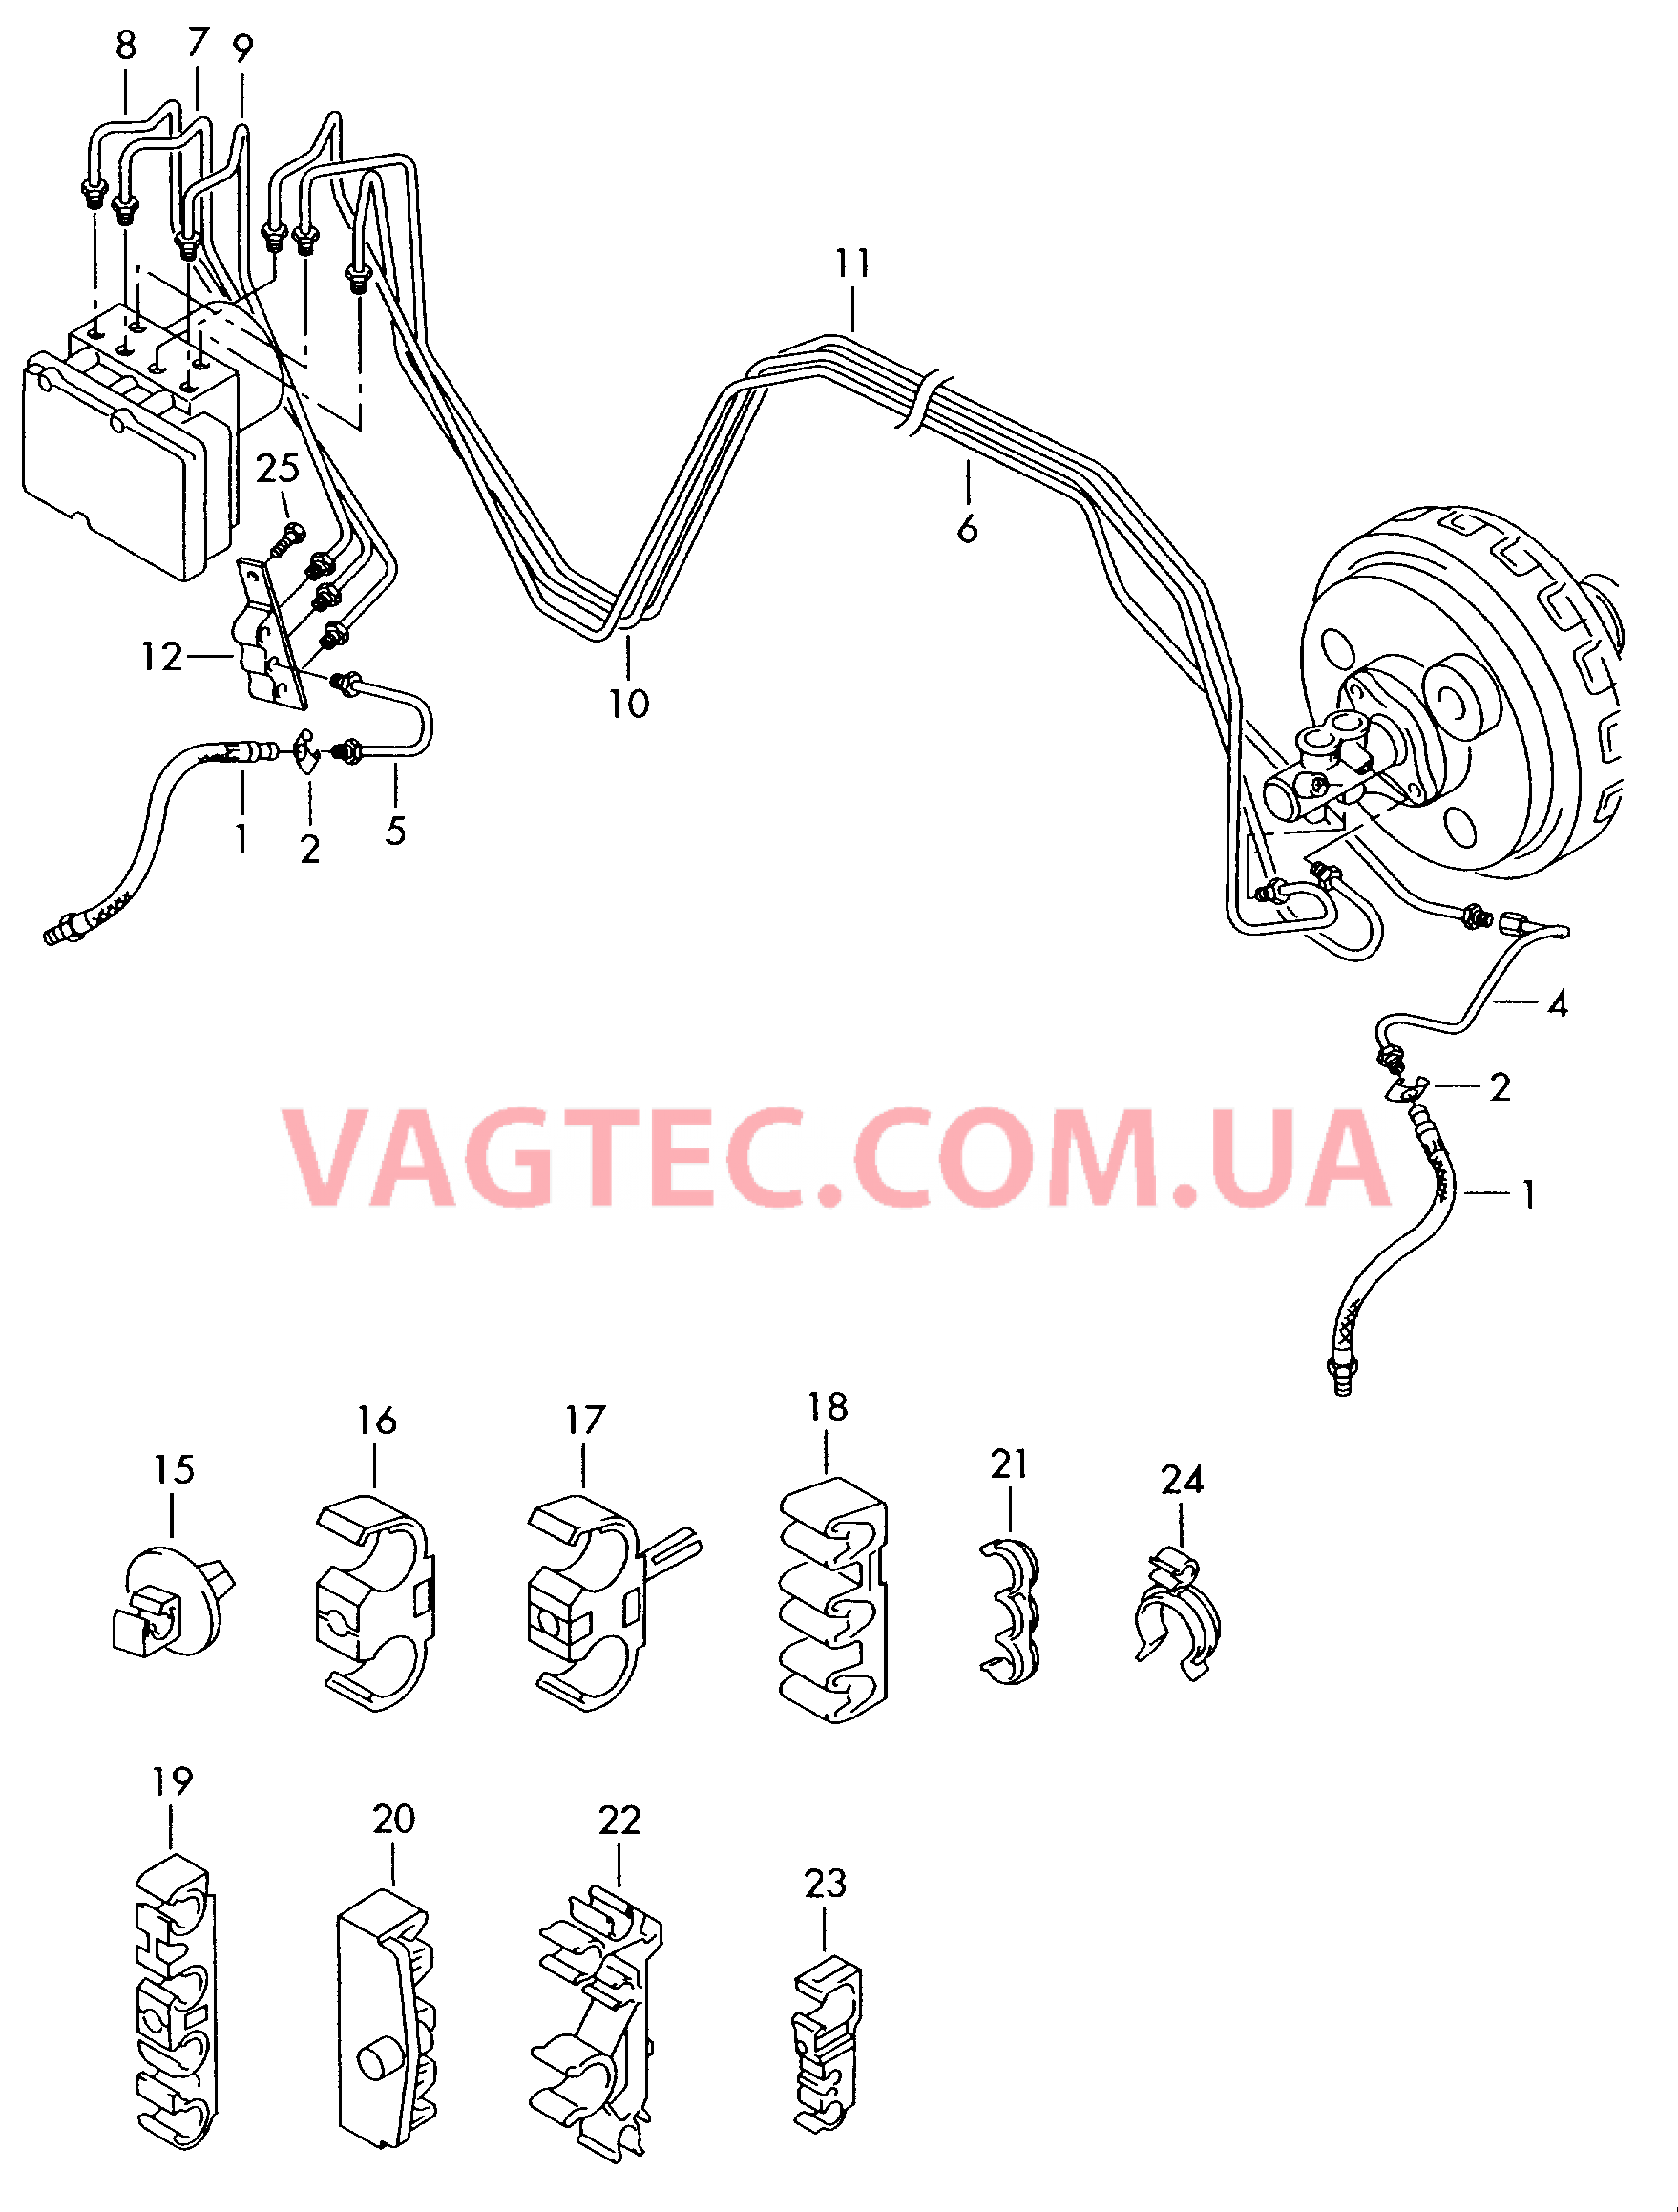 Тормозная трубка Тормозной шланг  для VOLKSWAGEN Touareg 2004